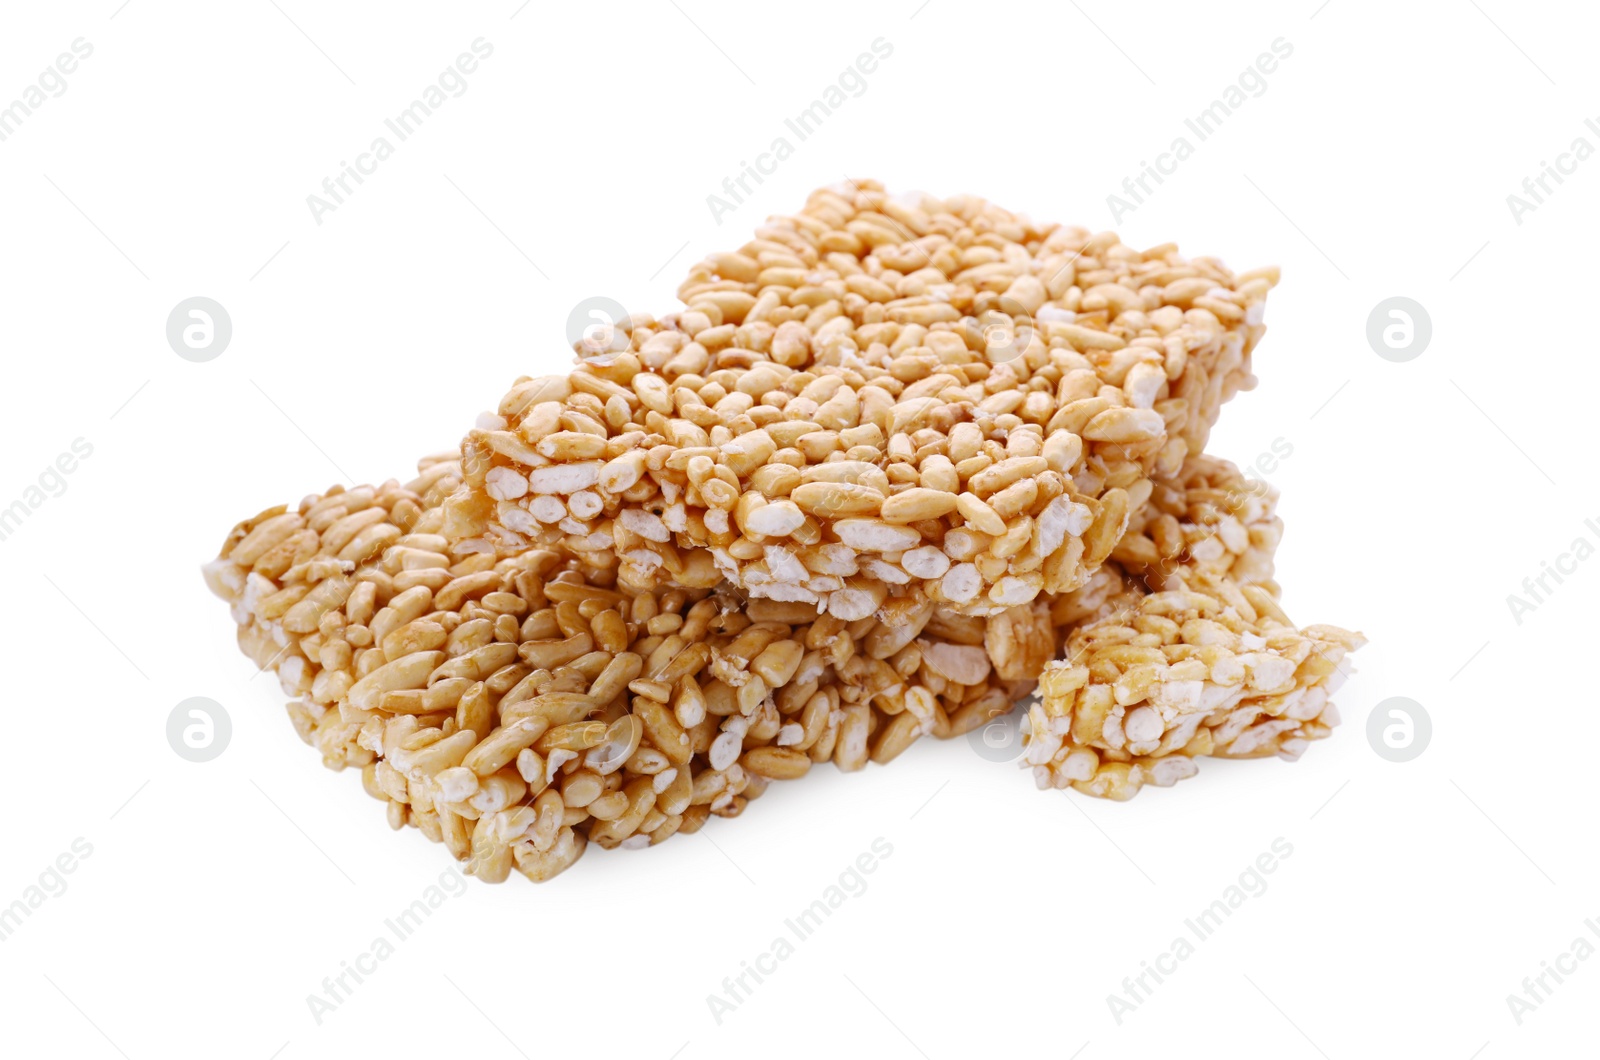 Photo of Puffed rice bars (kozinaki) on white background